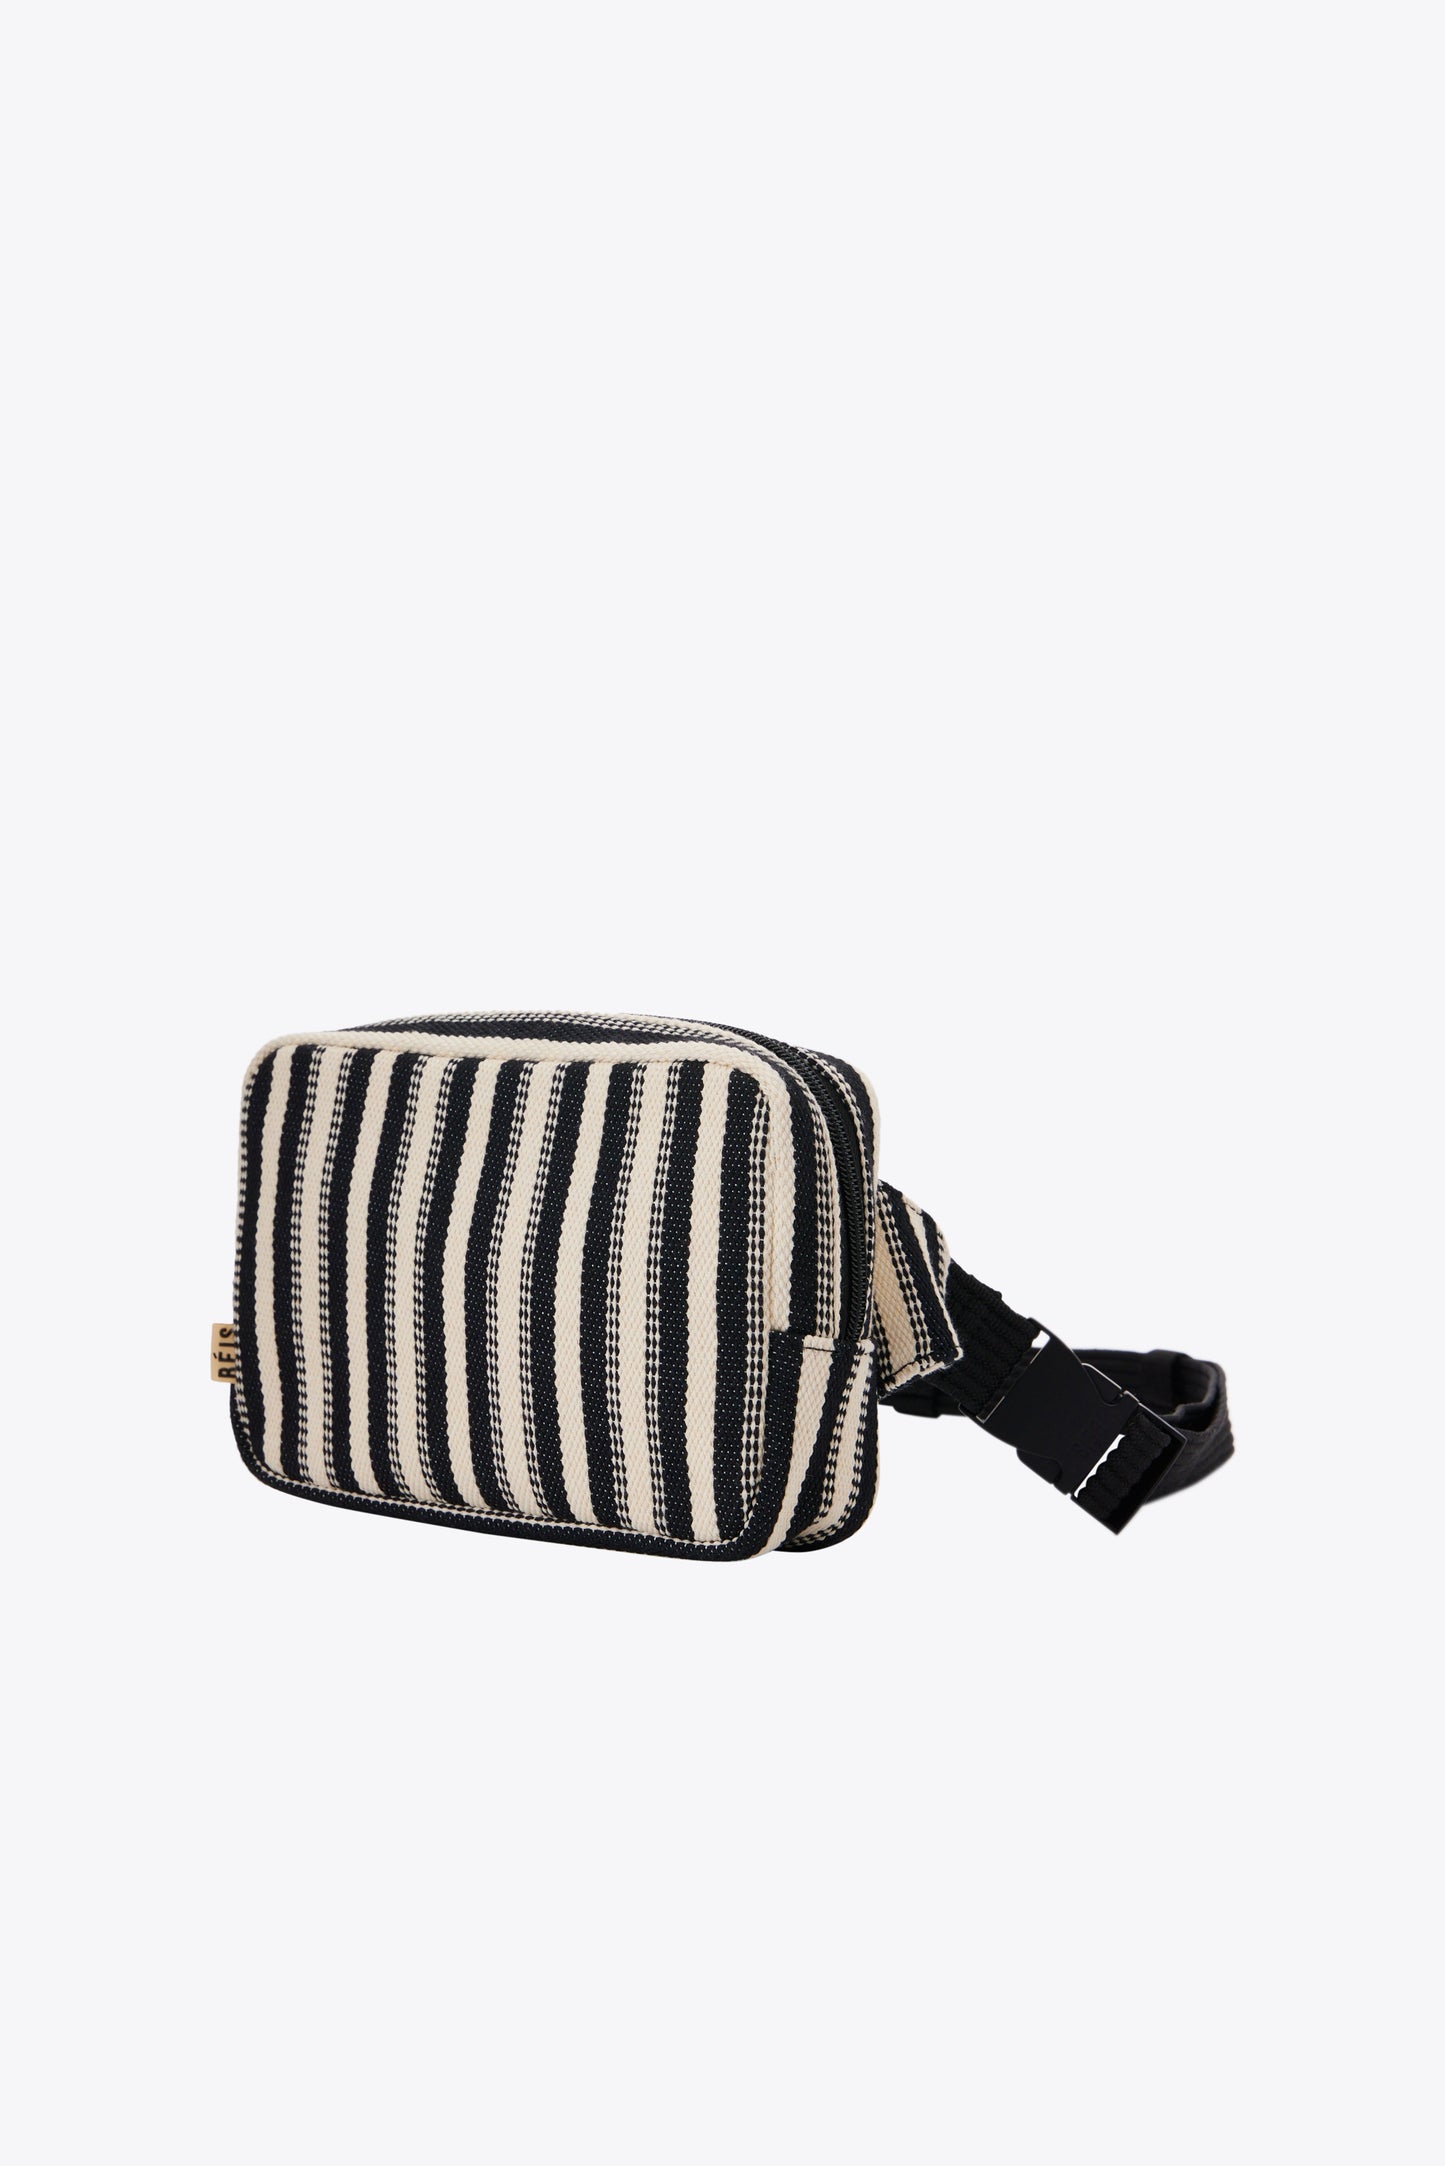 The Belt Bag in Black Stripe